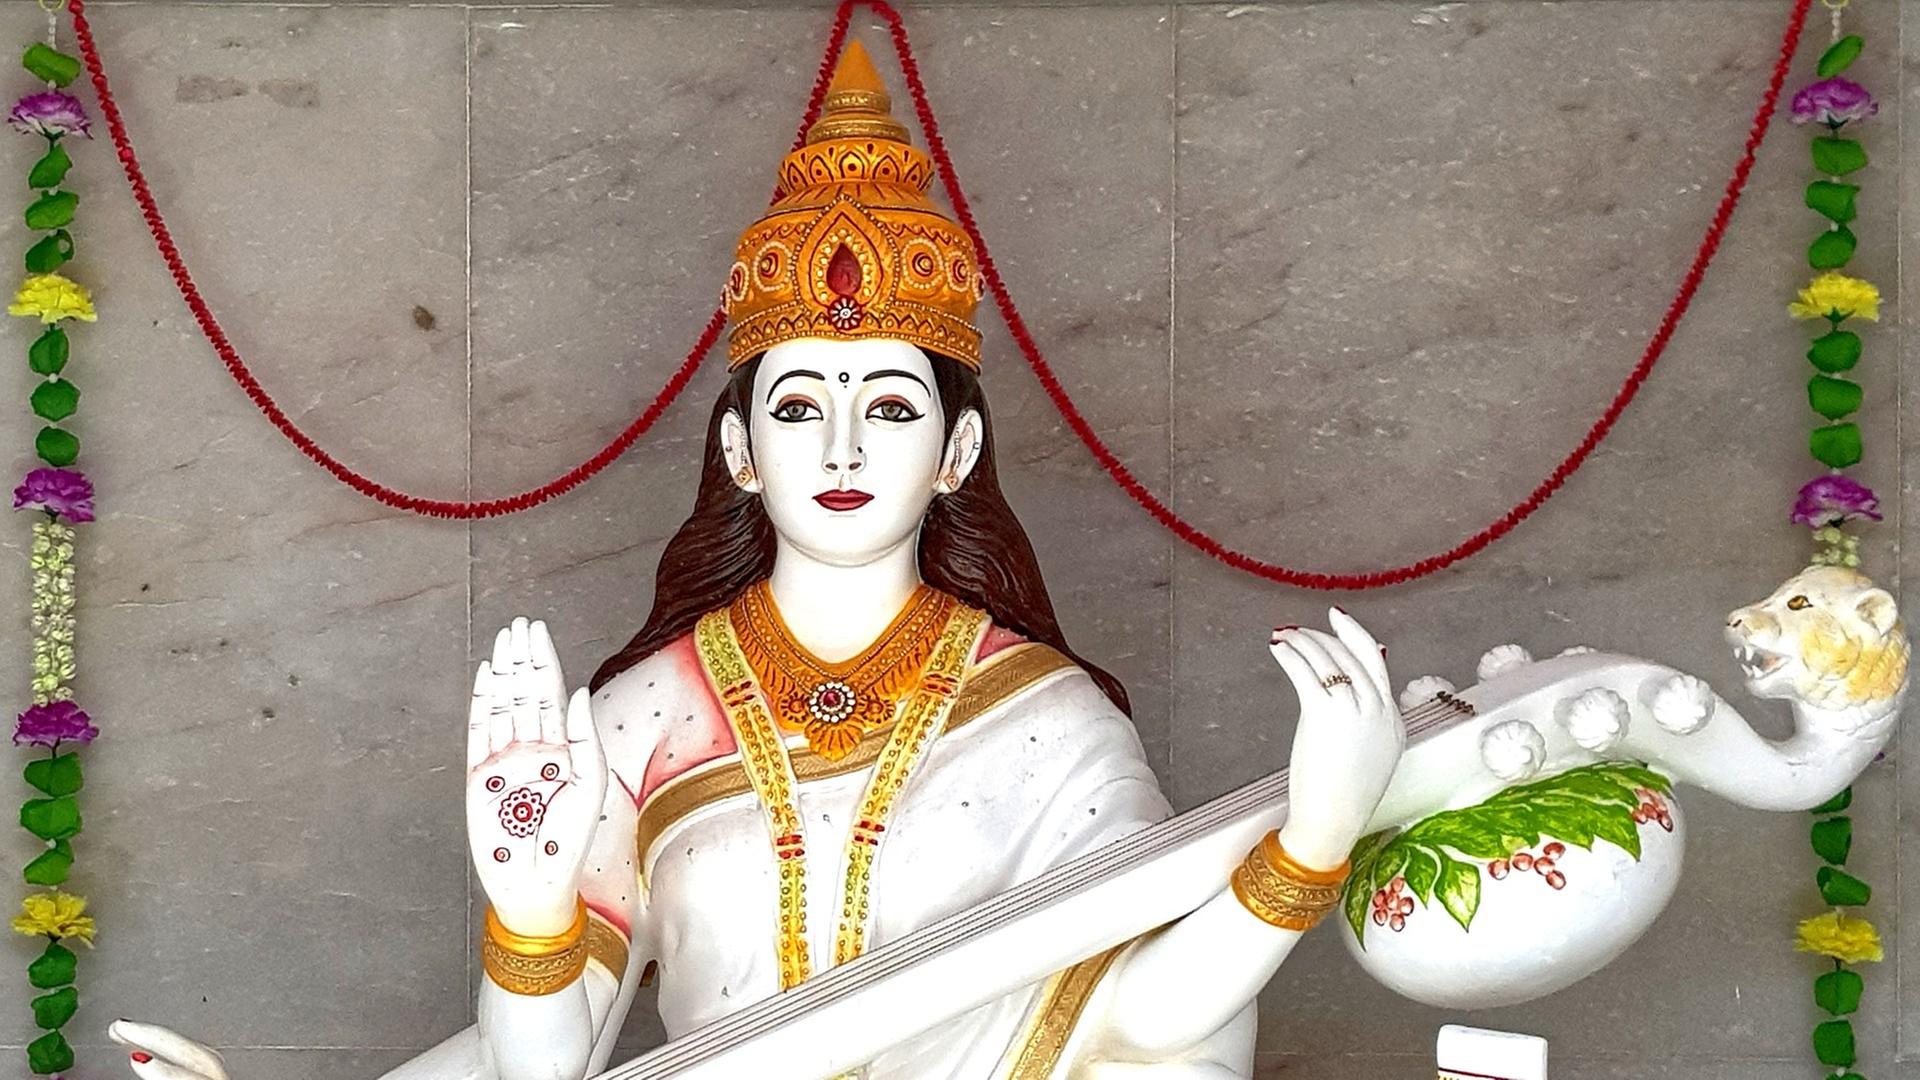 Skulptur der hinduistischen Gottheit Sarasvati, Göttin der Musik, mit goldener Krone und erhobener rechter Hand, in der anderen Hand hält sie ein Saiteninstrument mit Löwenkopf.